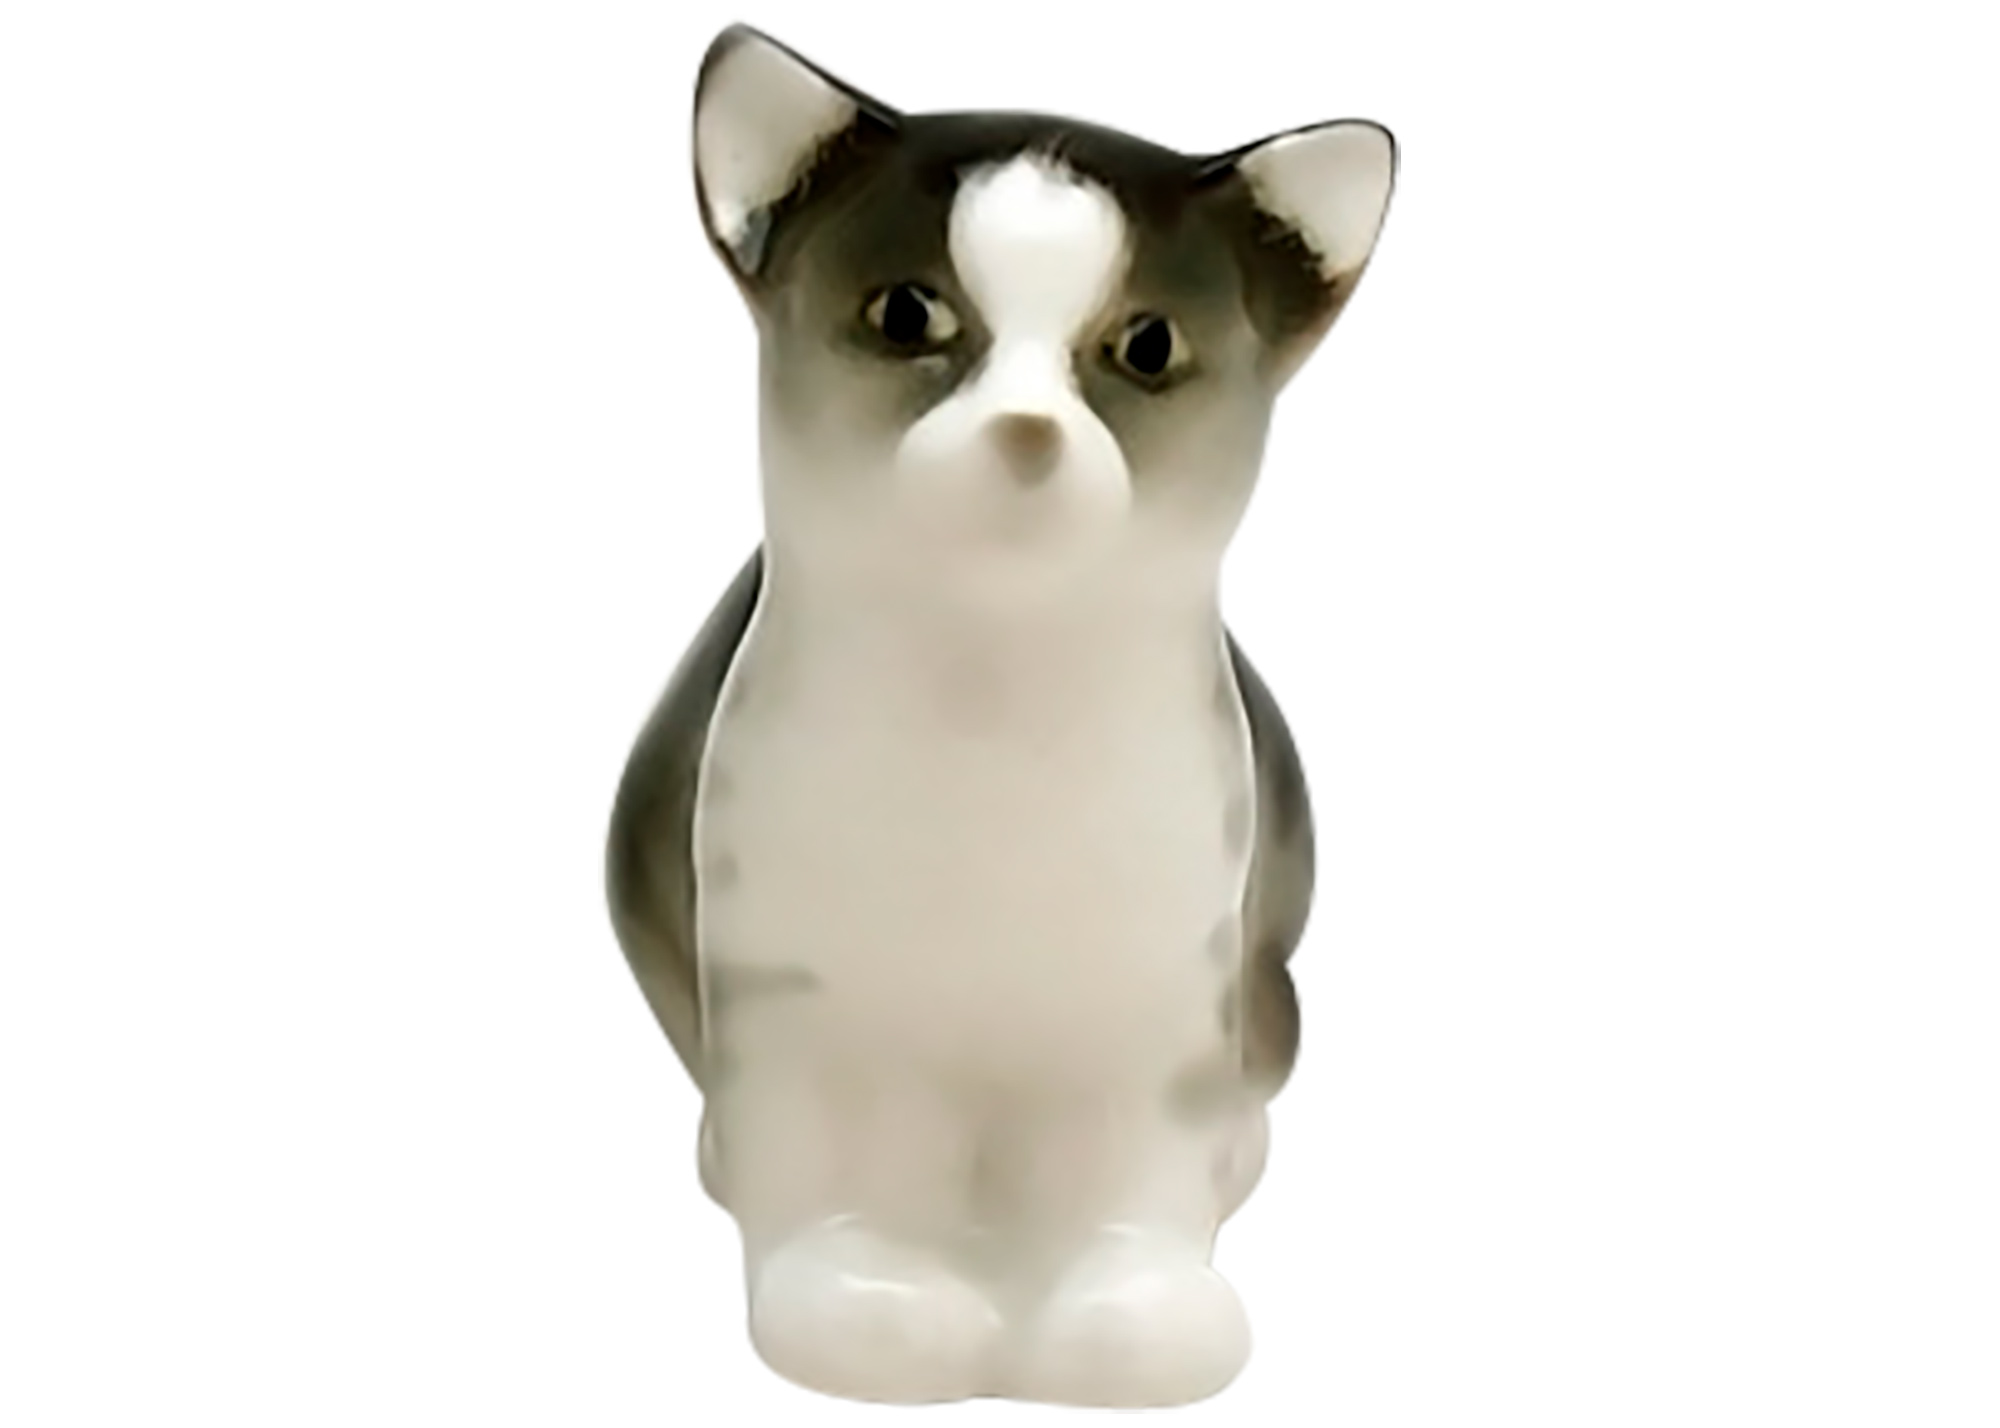 Buy Little Gray Kitten Porcelain Figurine at GoldenCockerel.com